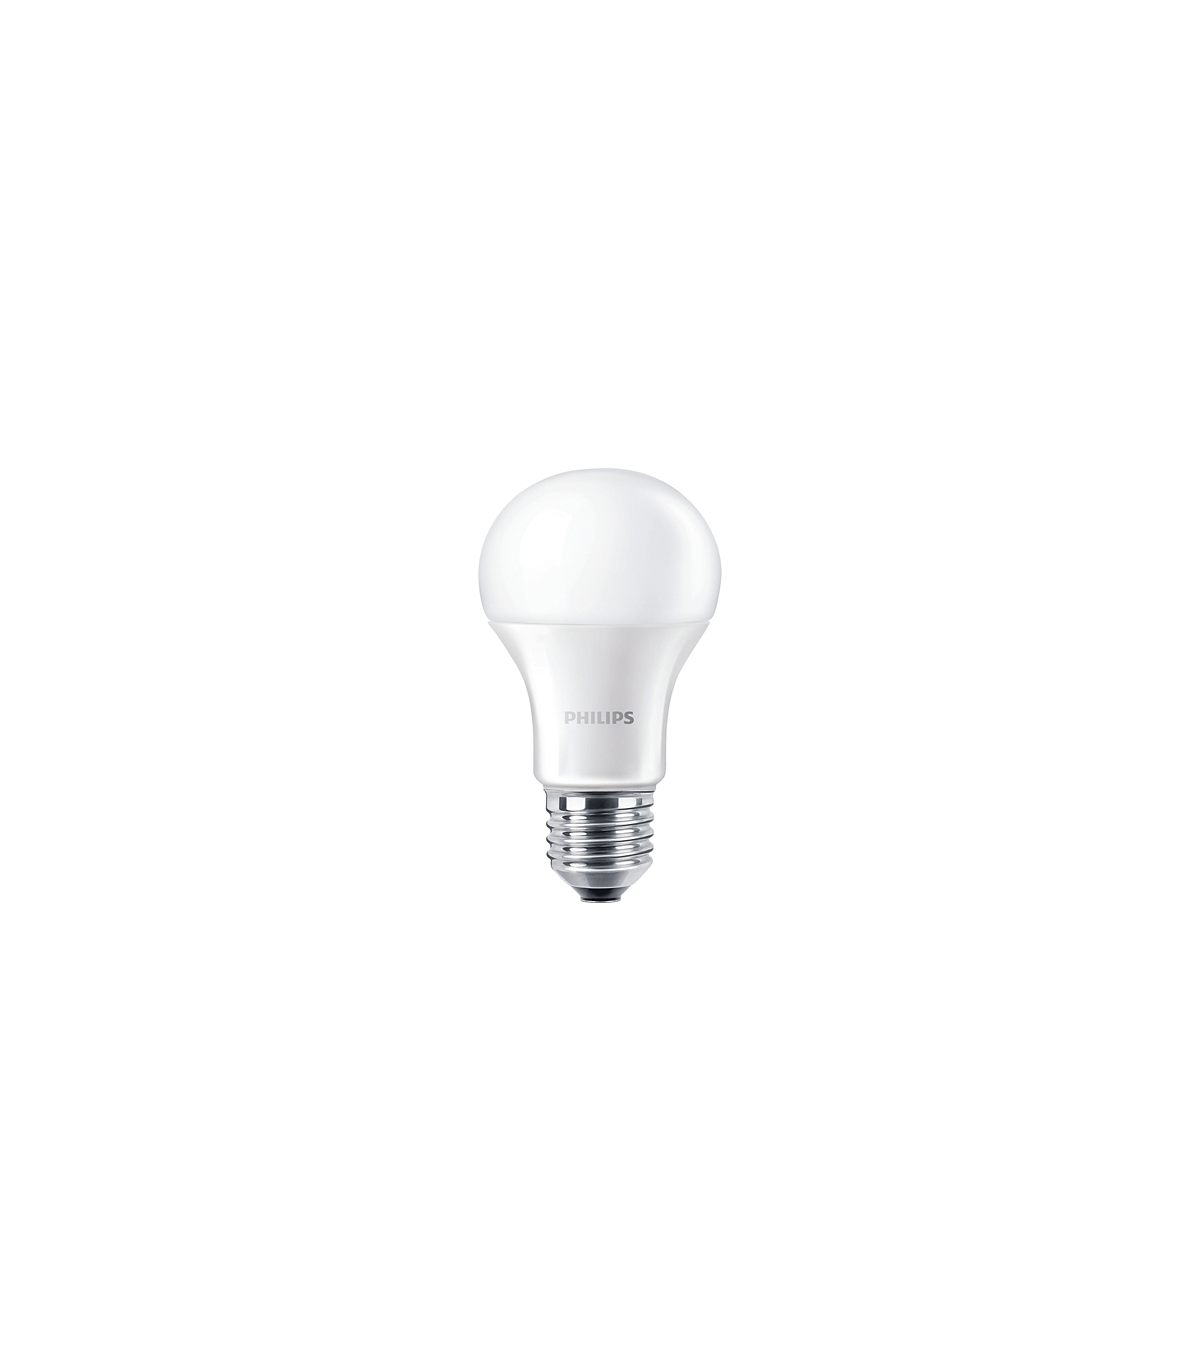 GLS A60 B22 - E27 - 3w - 25w - LED Globe Ampoule Blanc Froid Lampe Ampoule